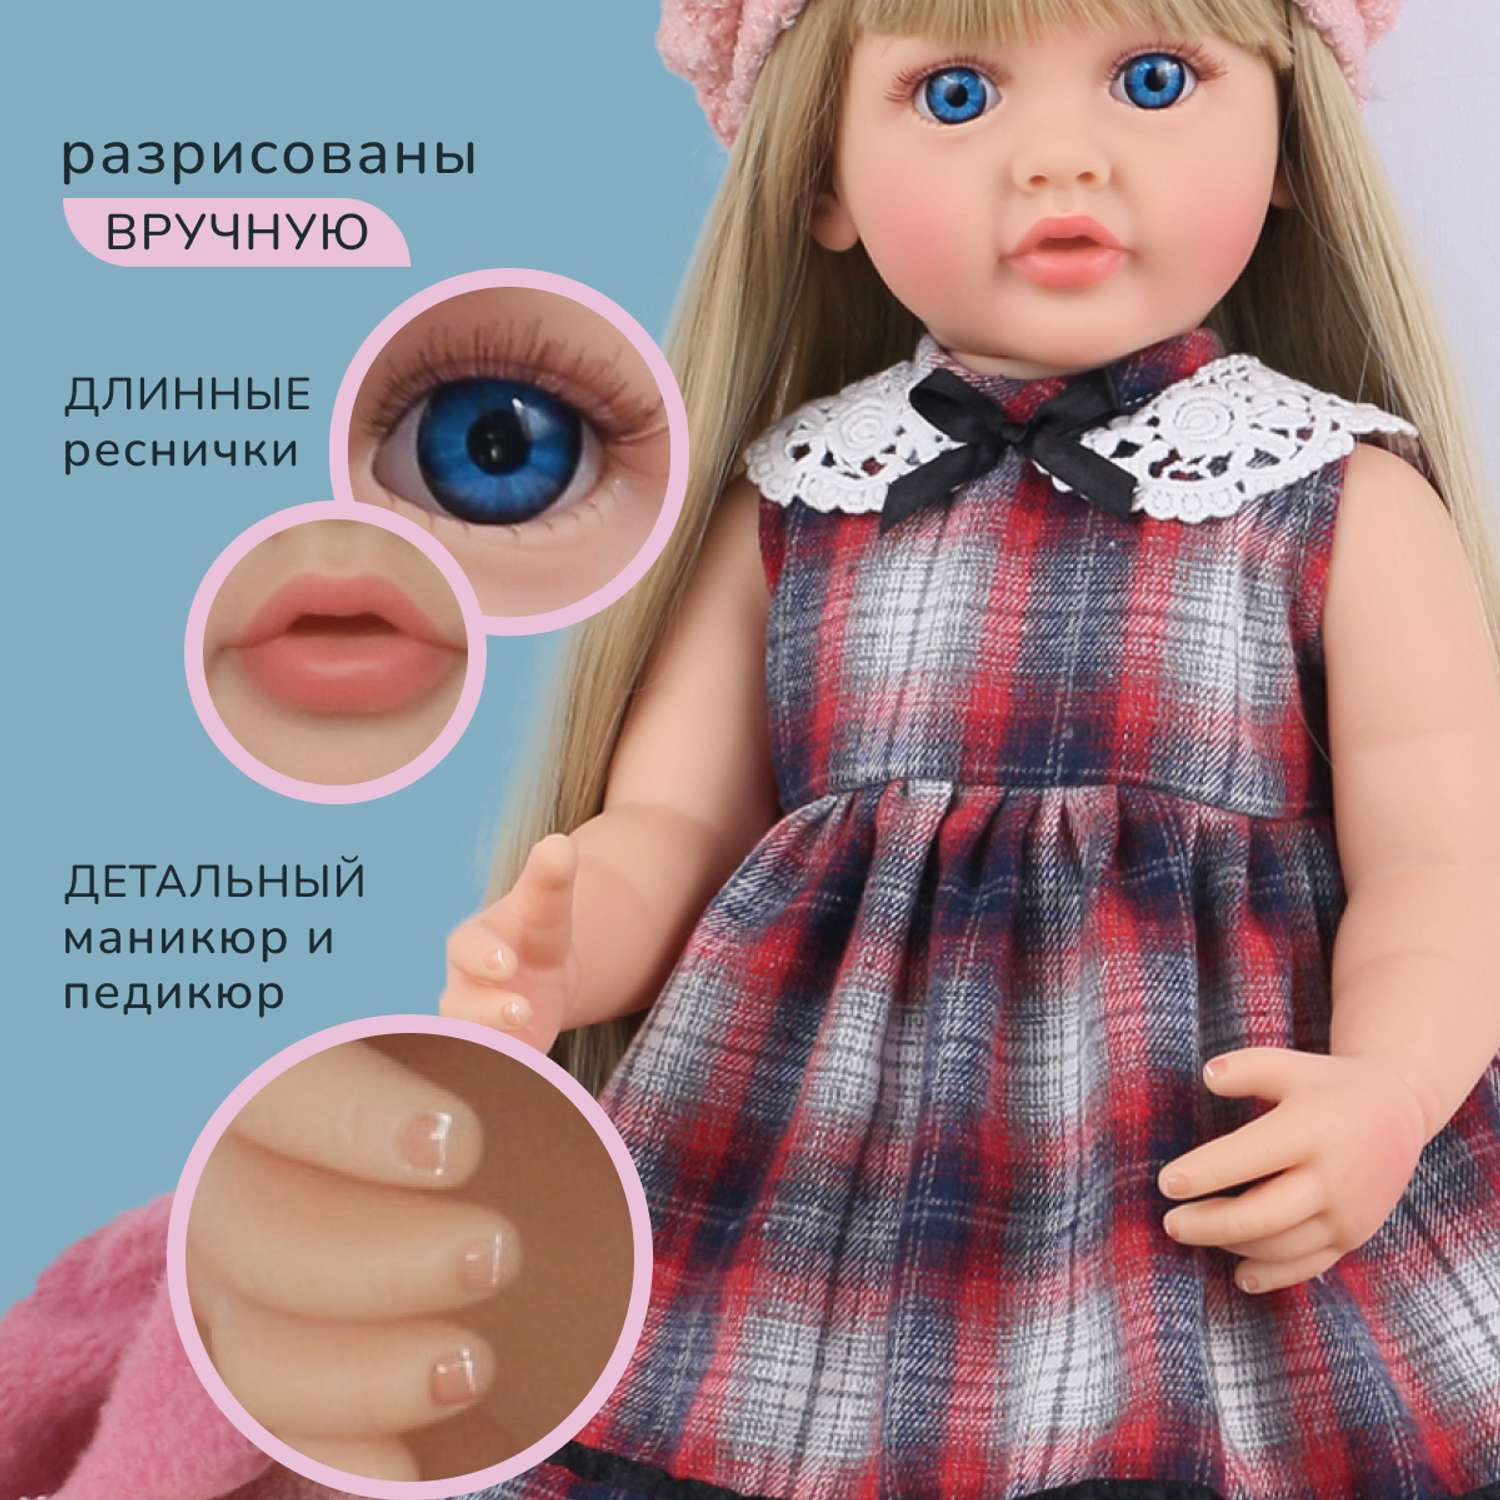 Кукла Реборн QA BABY Марианна большая пупс набор игрушки для девочки 55 см 5553 - фото 2